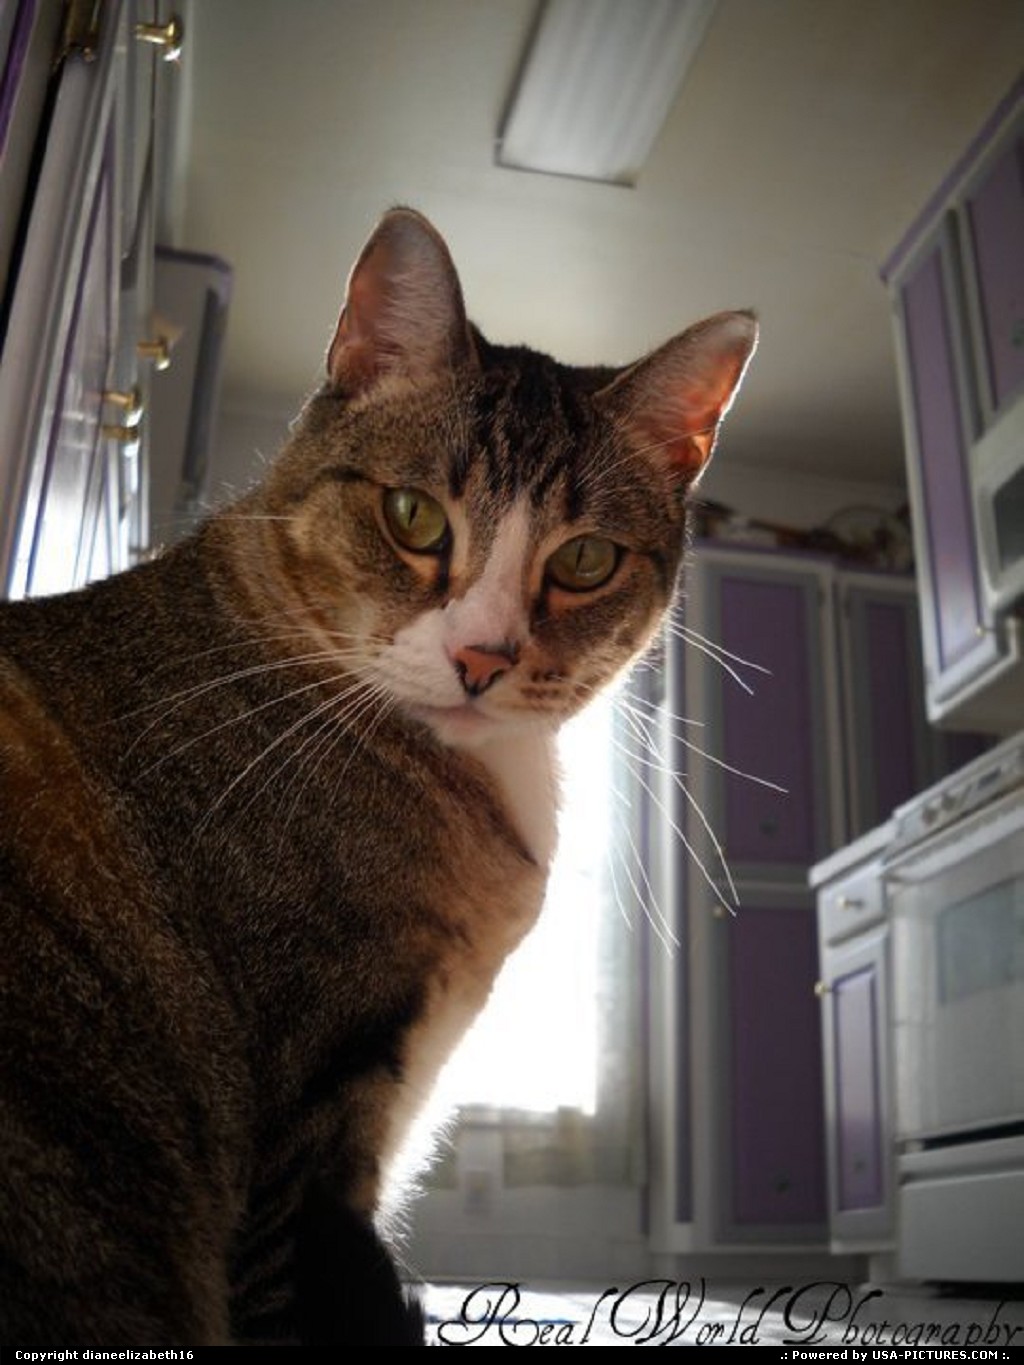 Picture by dianeelizabeth16: Cleburne Texas   cat, kitchen